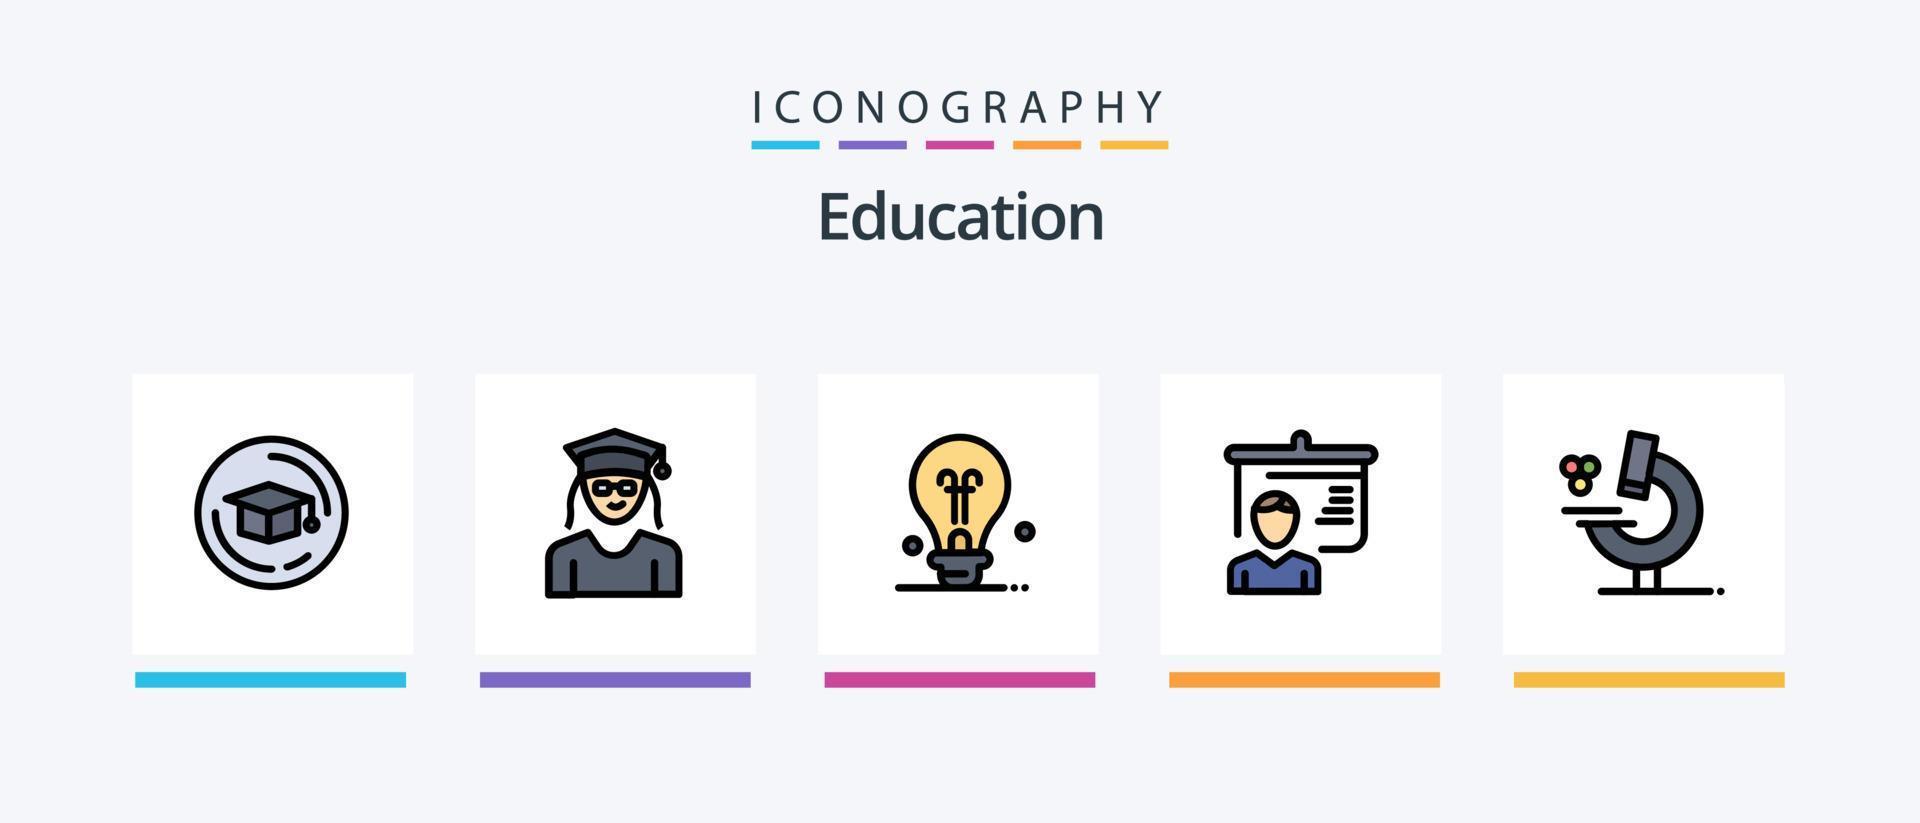 la línea de educación llenó el paquete de 5 íconos, incluida la escuela. educación. educación. gráfico. educación. diseño de iconos creativos vector